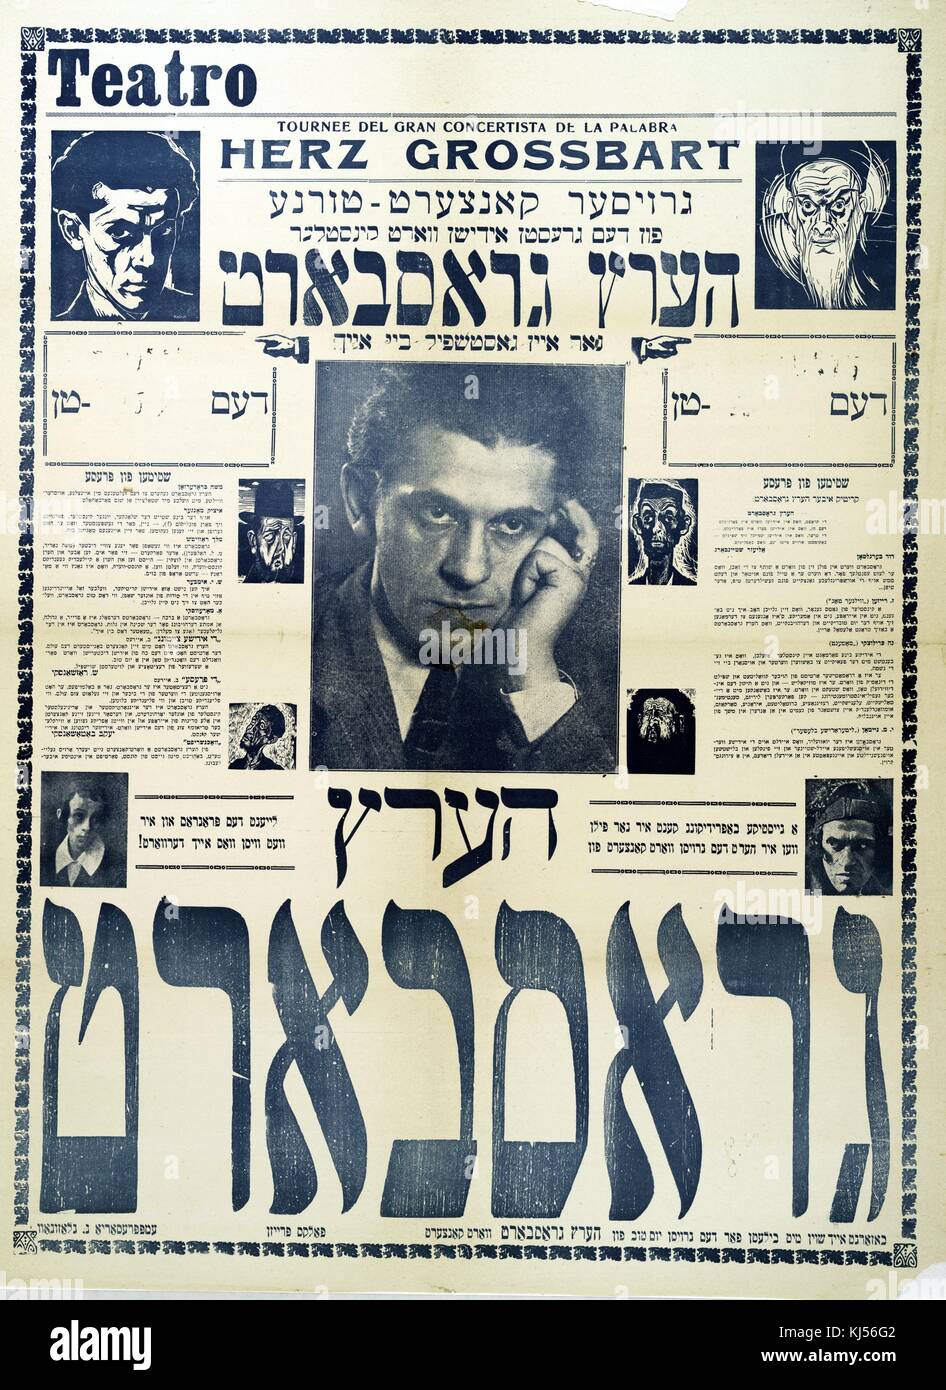 Une affiche pour une pièce de théâtre yiddish, écrit en yiddish, mais  surtout dans certains détails sont fournis en espagnol, la performance aura  : herz grossbart, 1900. à partir de la bibliothèque